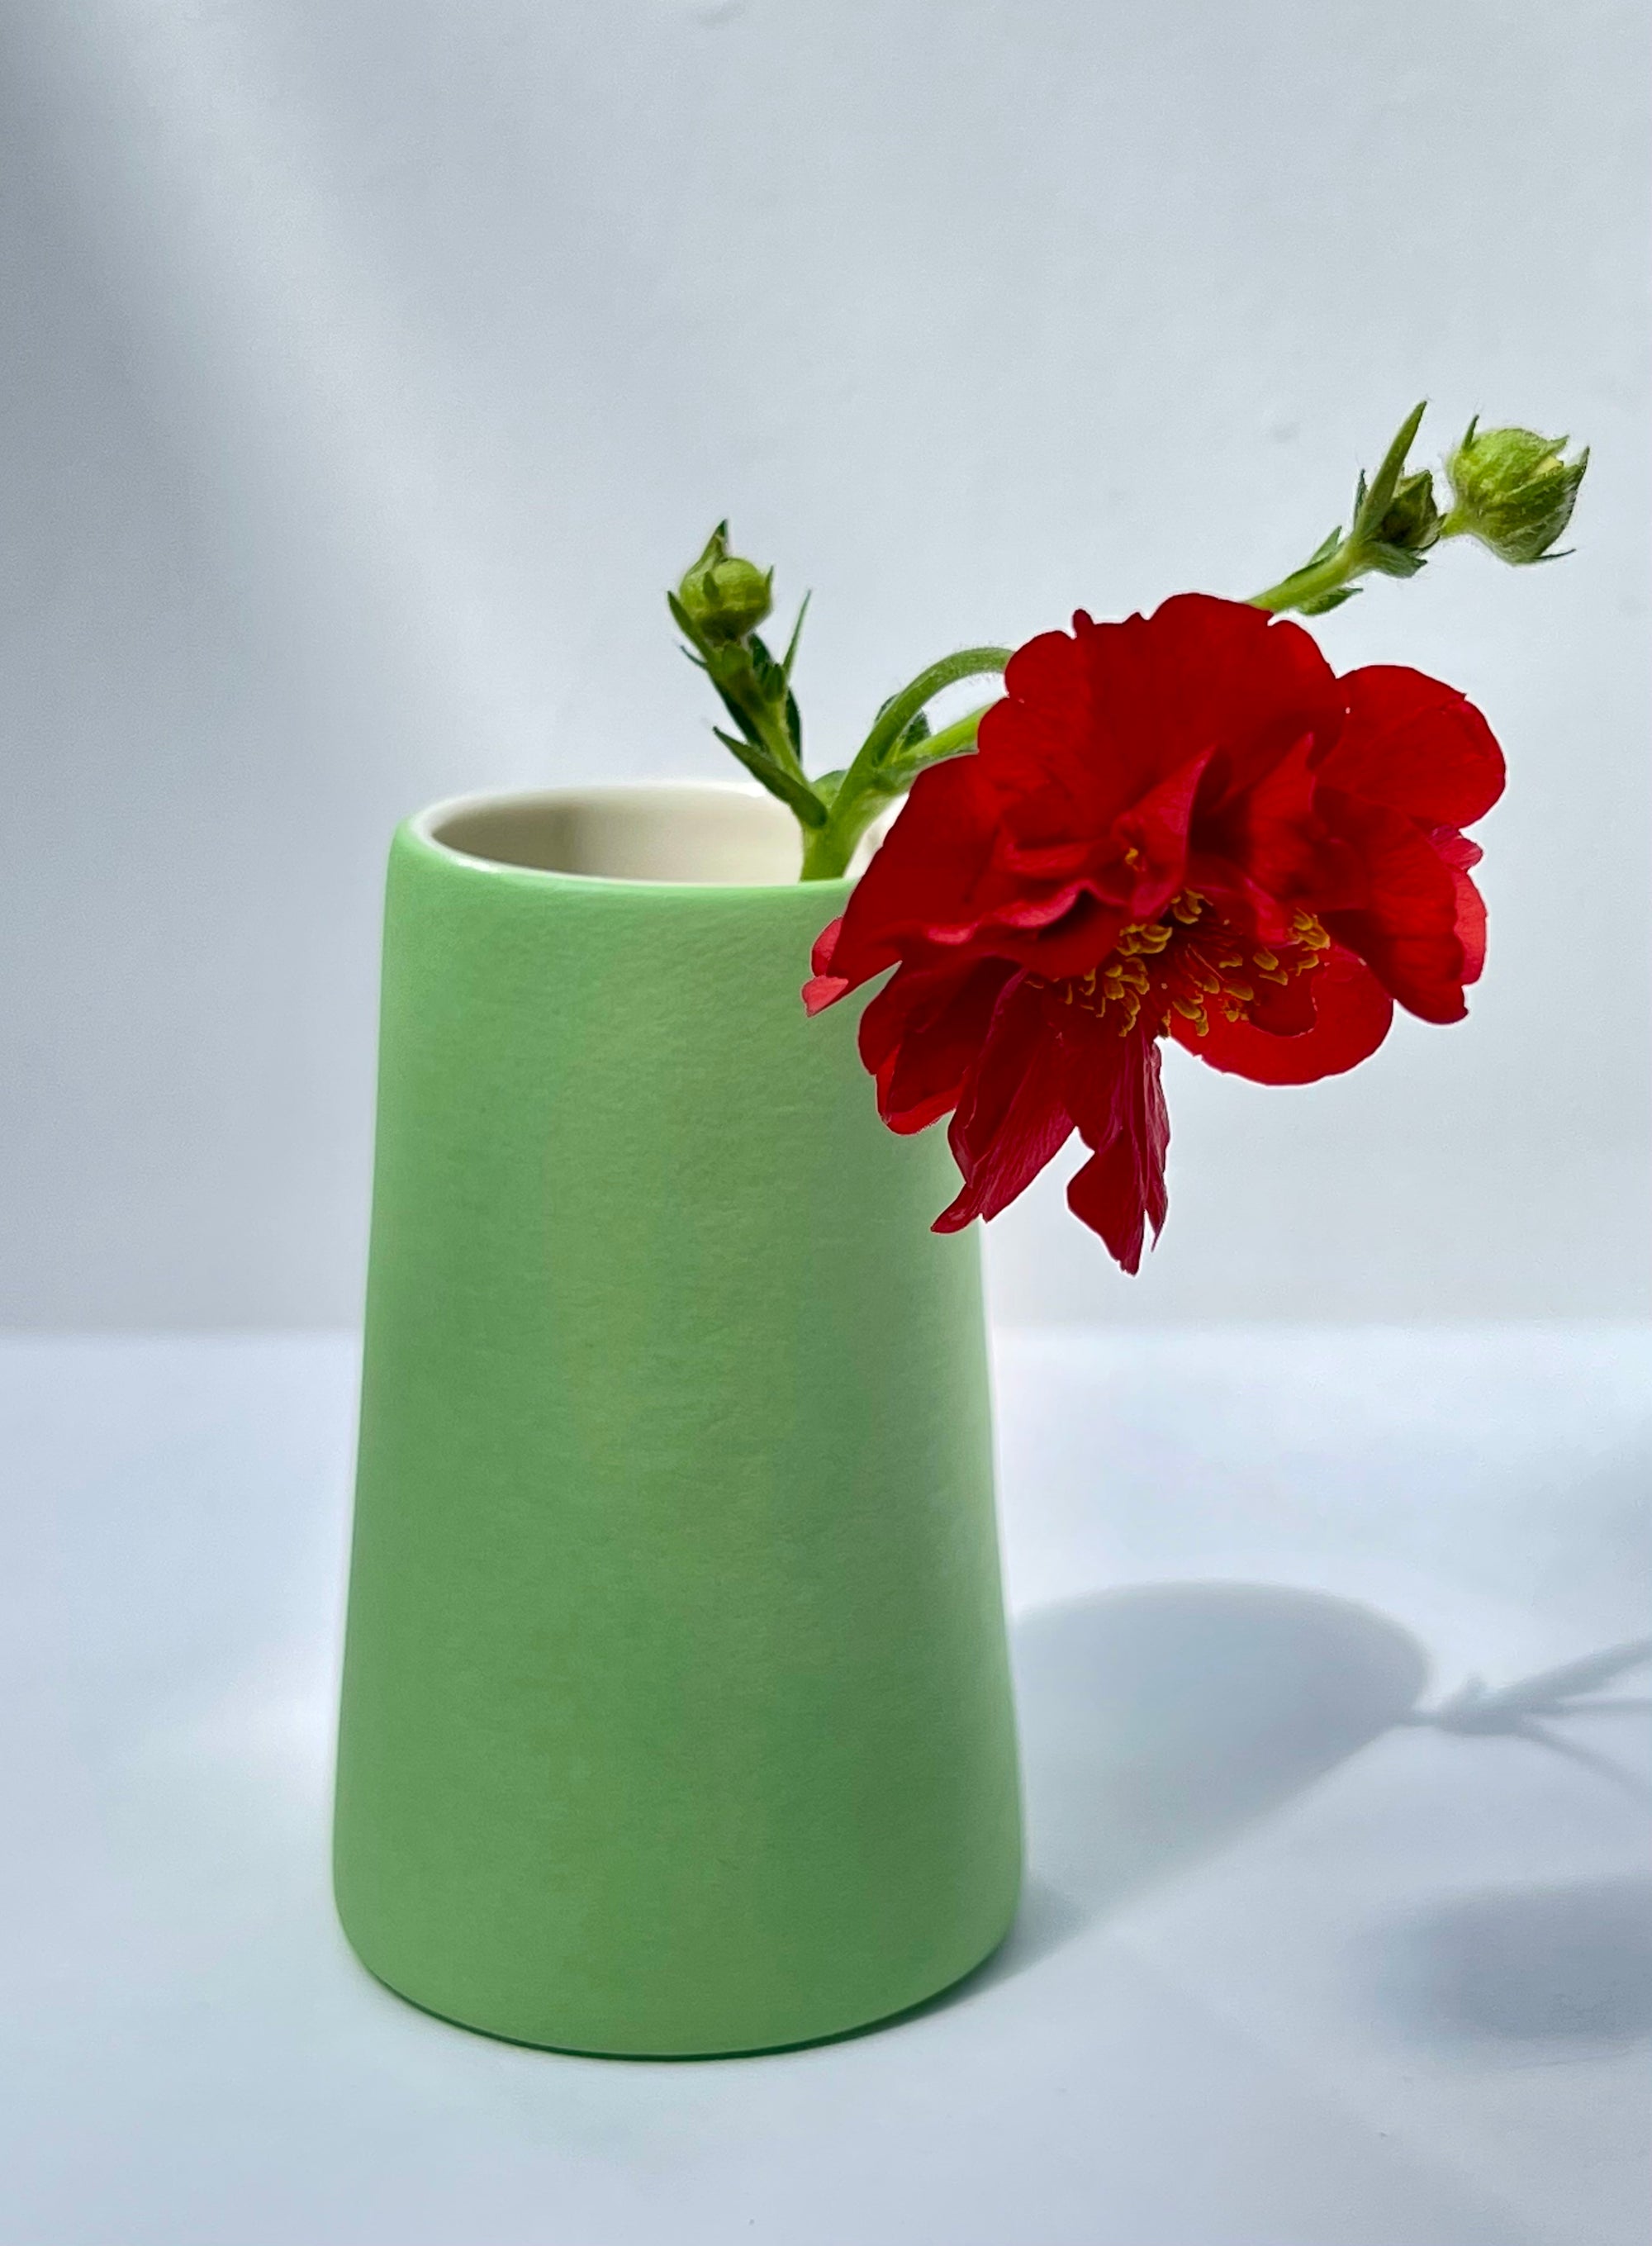 Pair of Mini Vases, Blue & Green, Adele Stanley